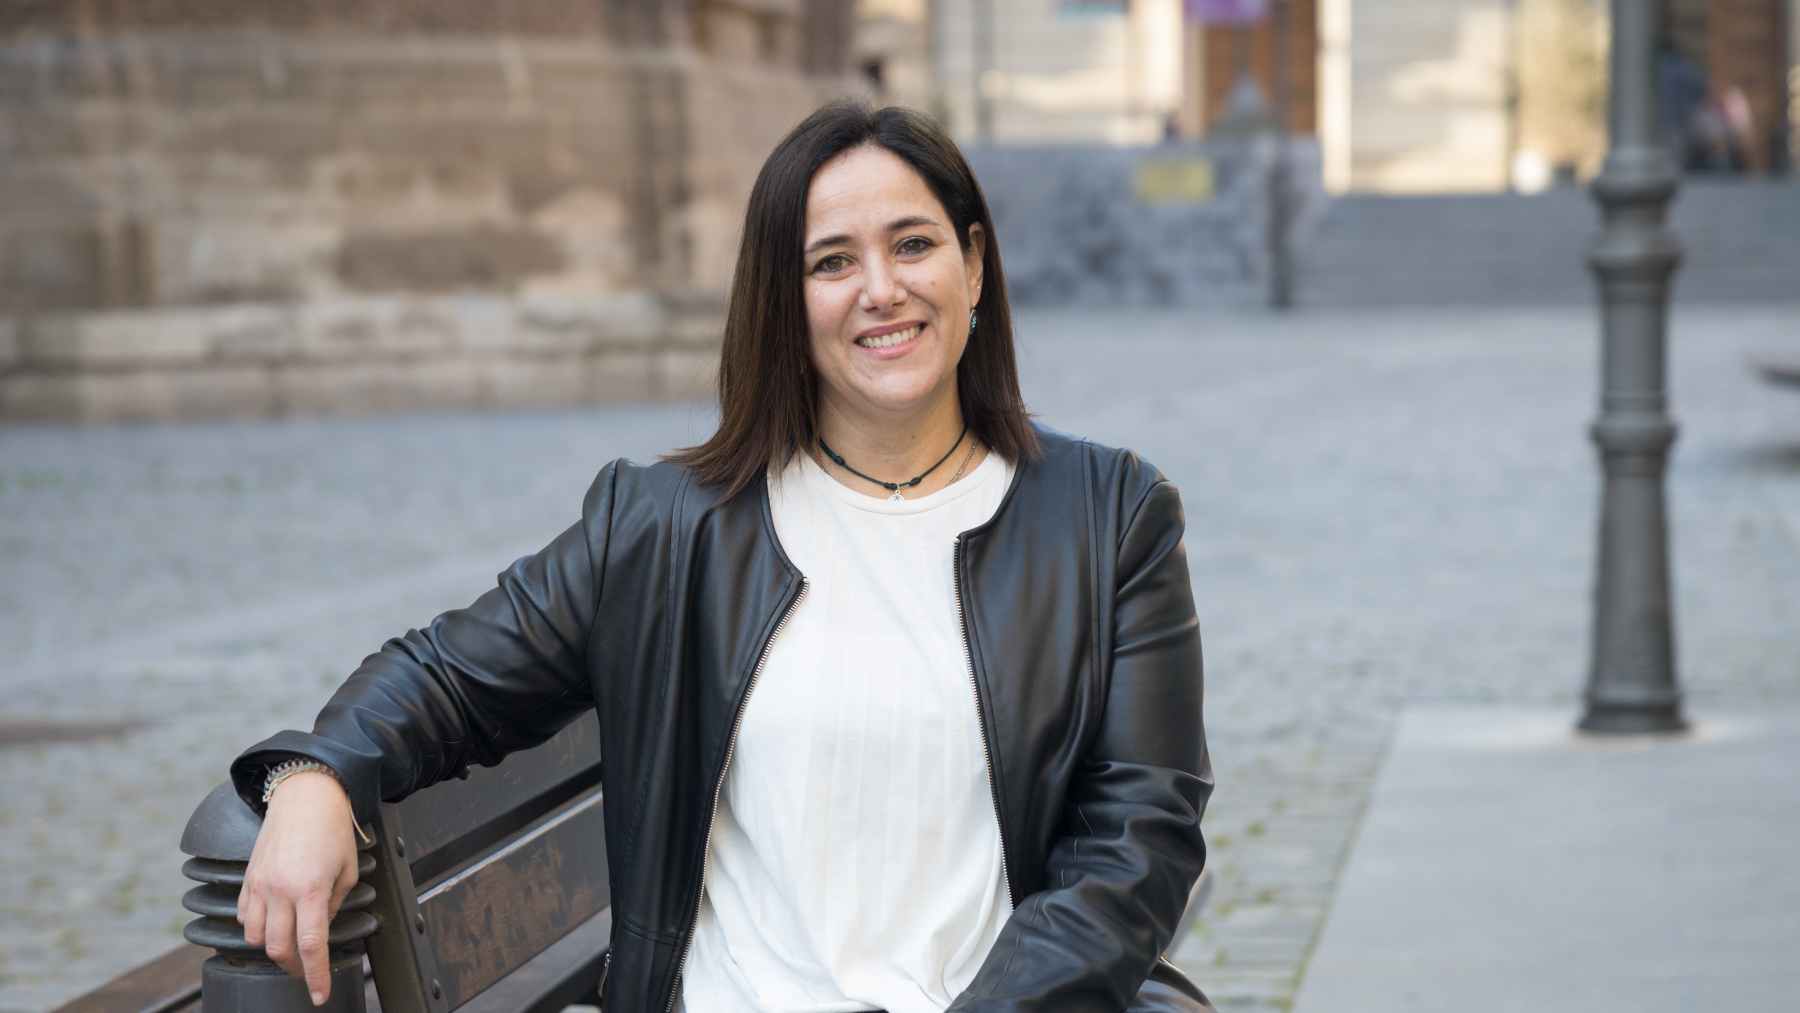 Una experta en arte gestionará la cultura en Tudela tras su nombramiento como directora